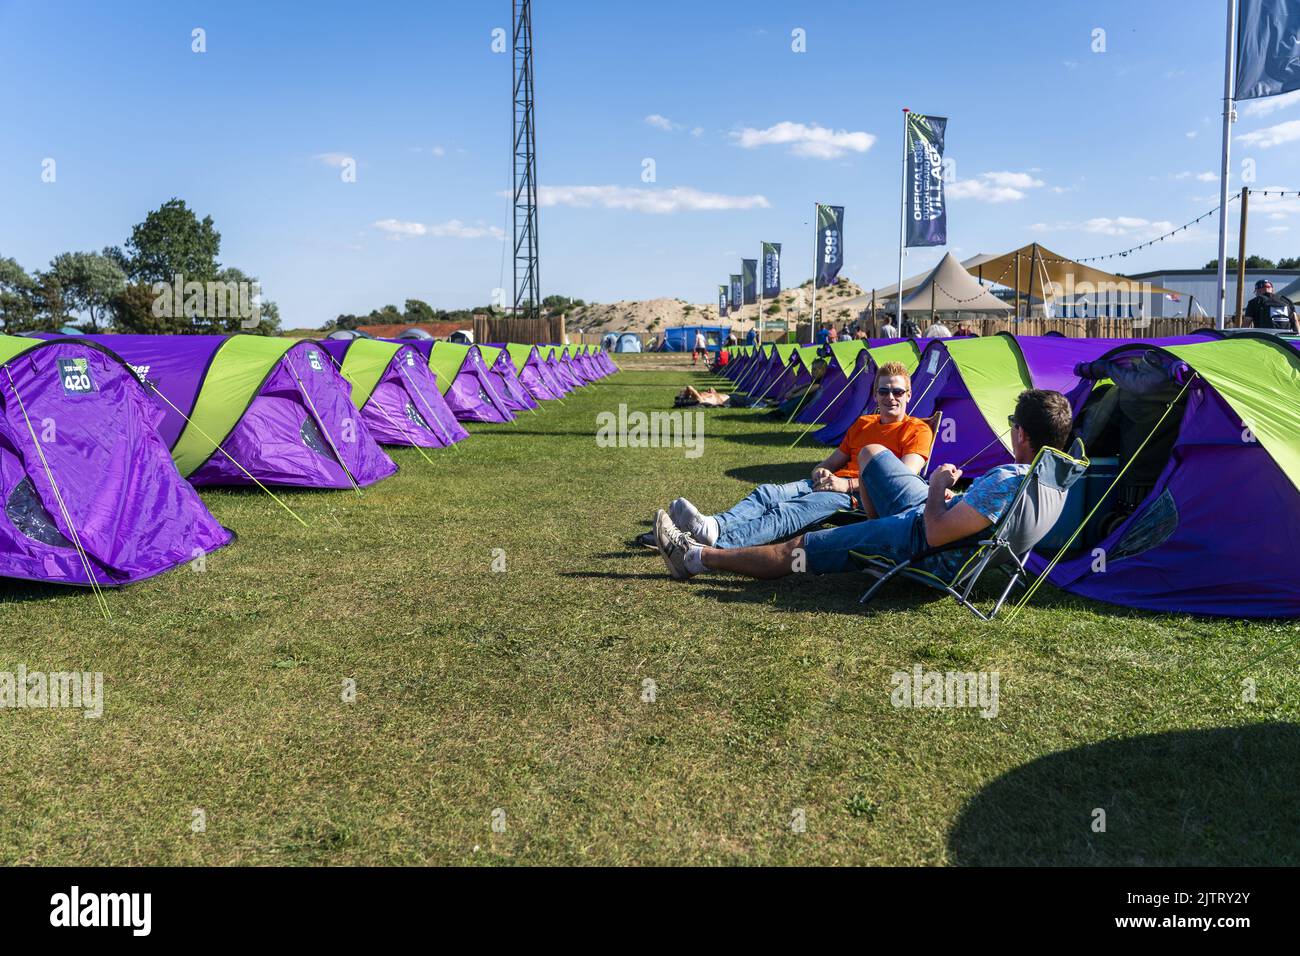 2022-09-01 16:39:05 ZANDVOORT - Besucher auf dem Campingplatz im 538 Dutch  Grand Prix Village. Der offizielle Formel-1-Campingplatz in Zandvoort ist  ausverkauft. ANP JEROEN JUMELET niederlande Out - belgien Out  Stockfotografie - Alamy